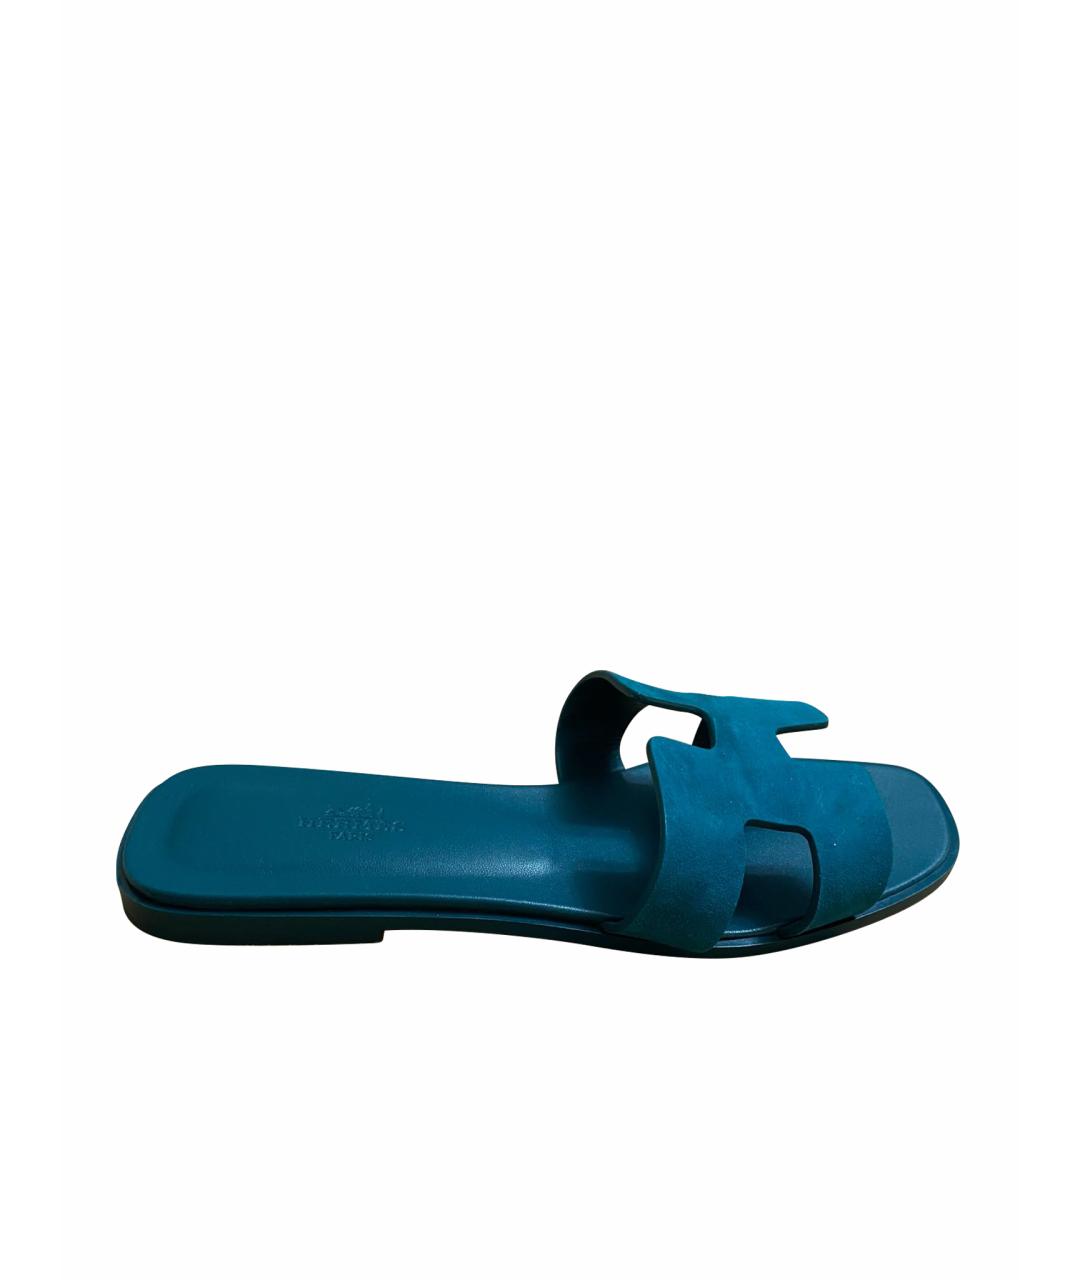 HERMES PRE-OWNED Синие замшевые сандалии, фото 1